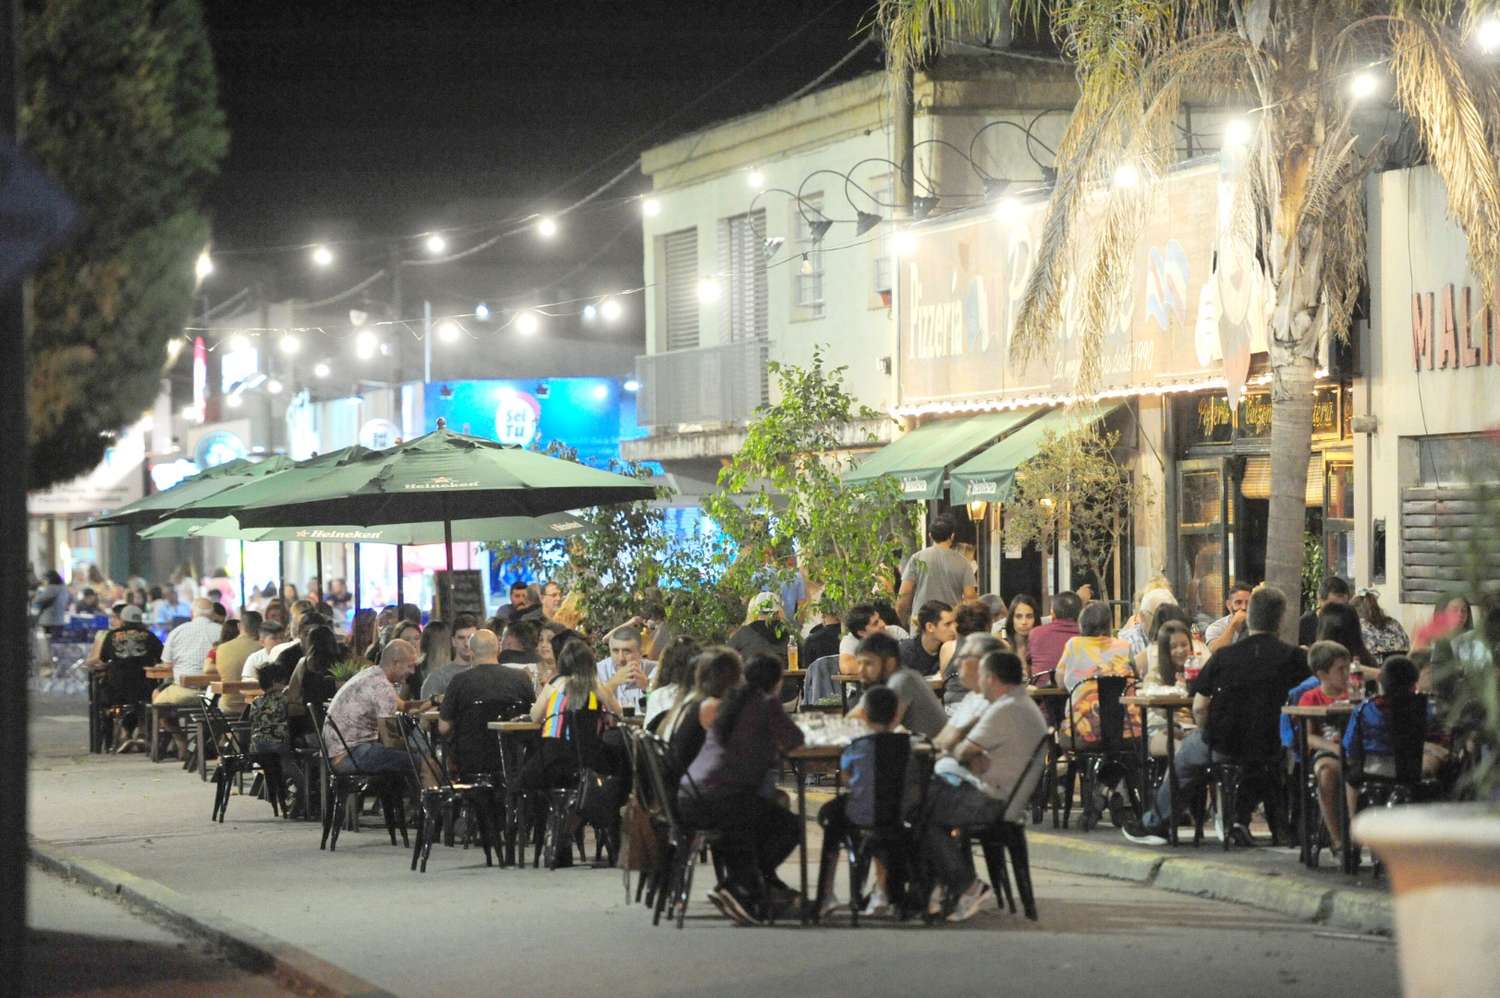 Sin la extensión horaria de cierre de restaurantes, “muchos turistas se quedarán sin el servicio”, dijo Giachello